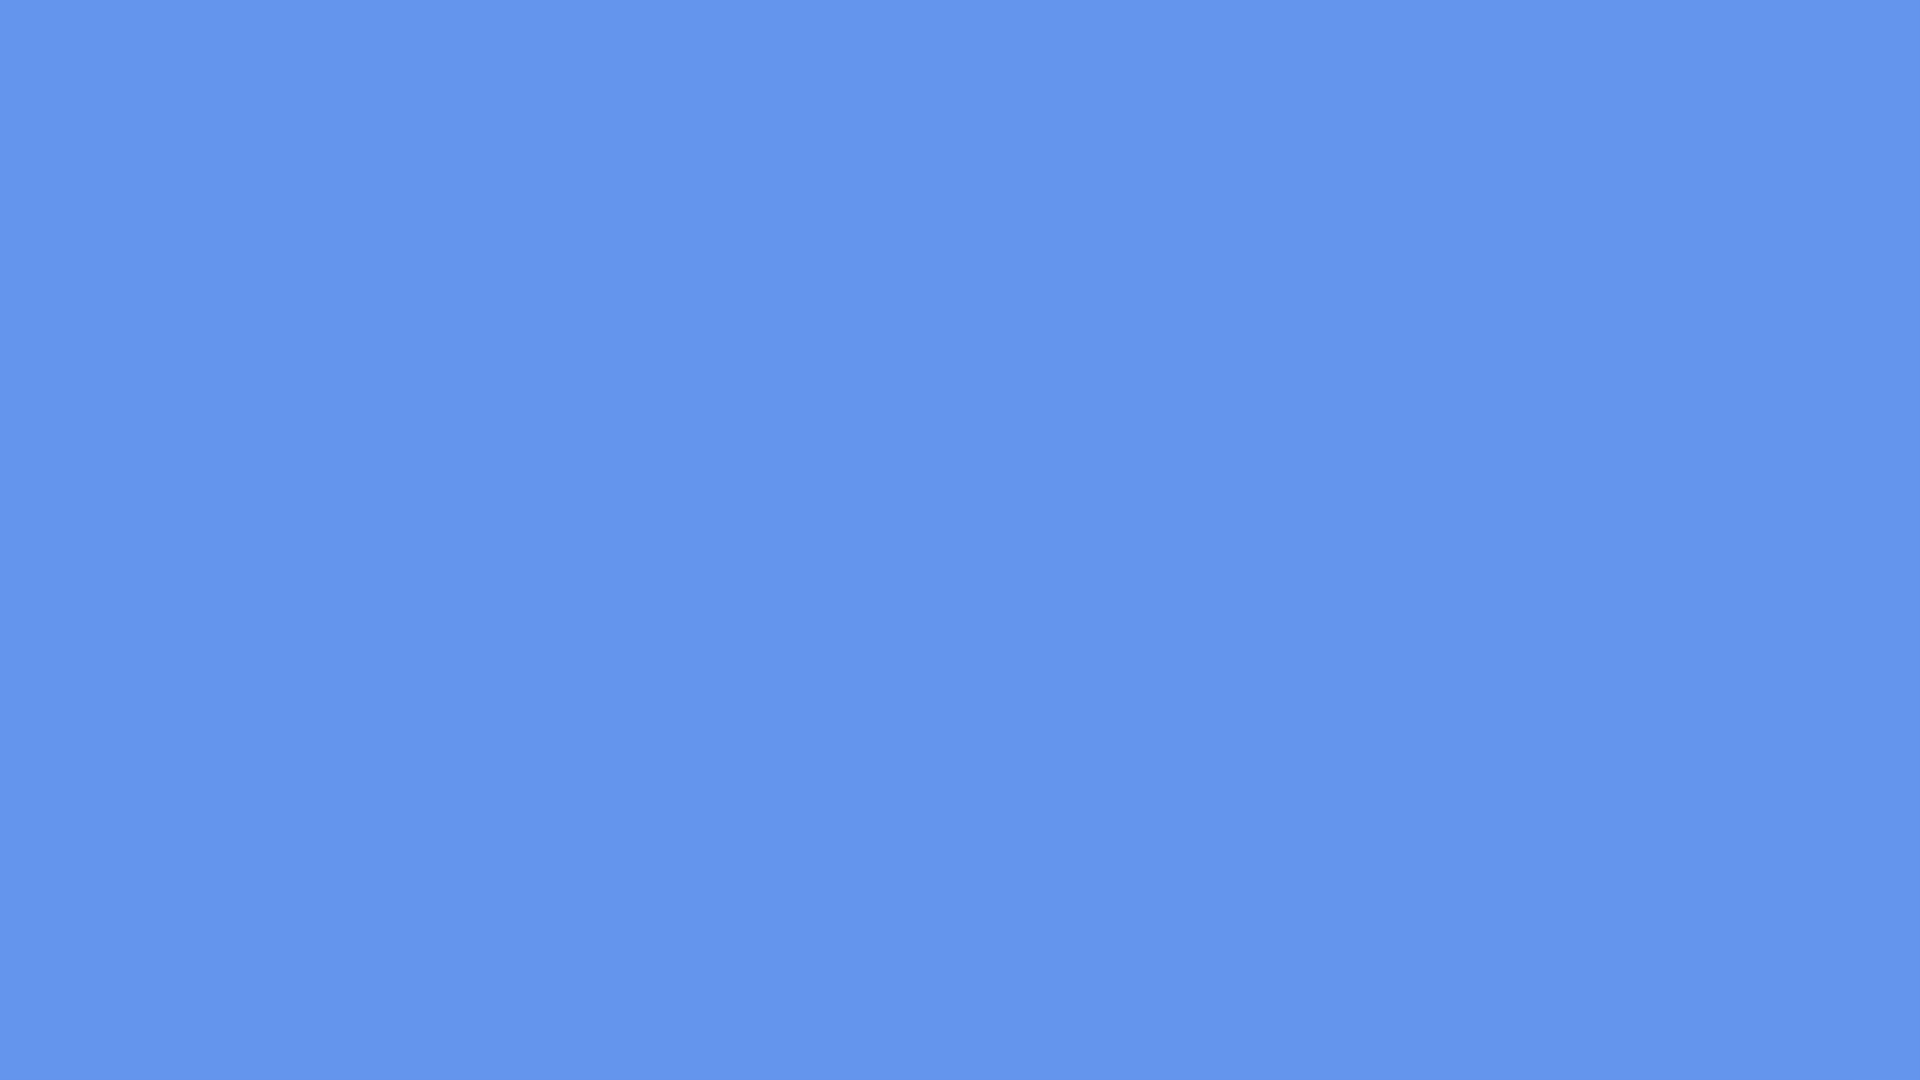 cornflower blue color palette